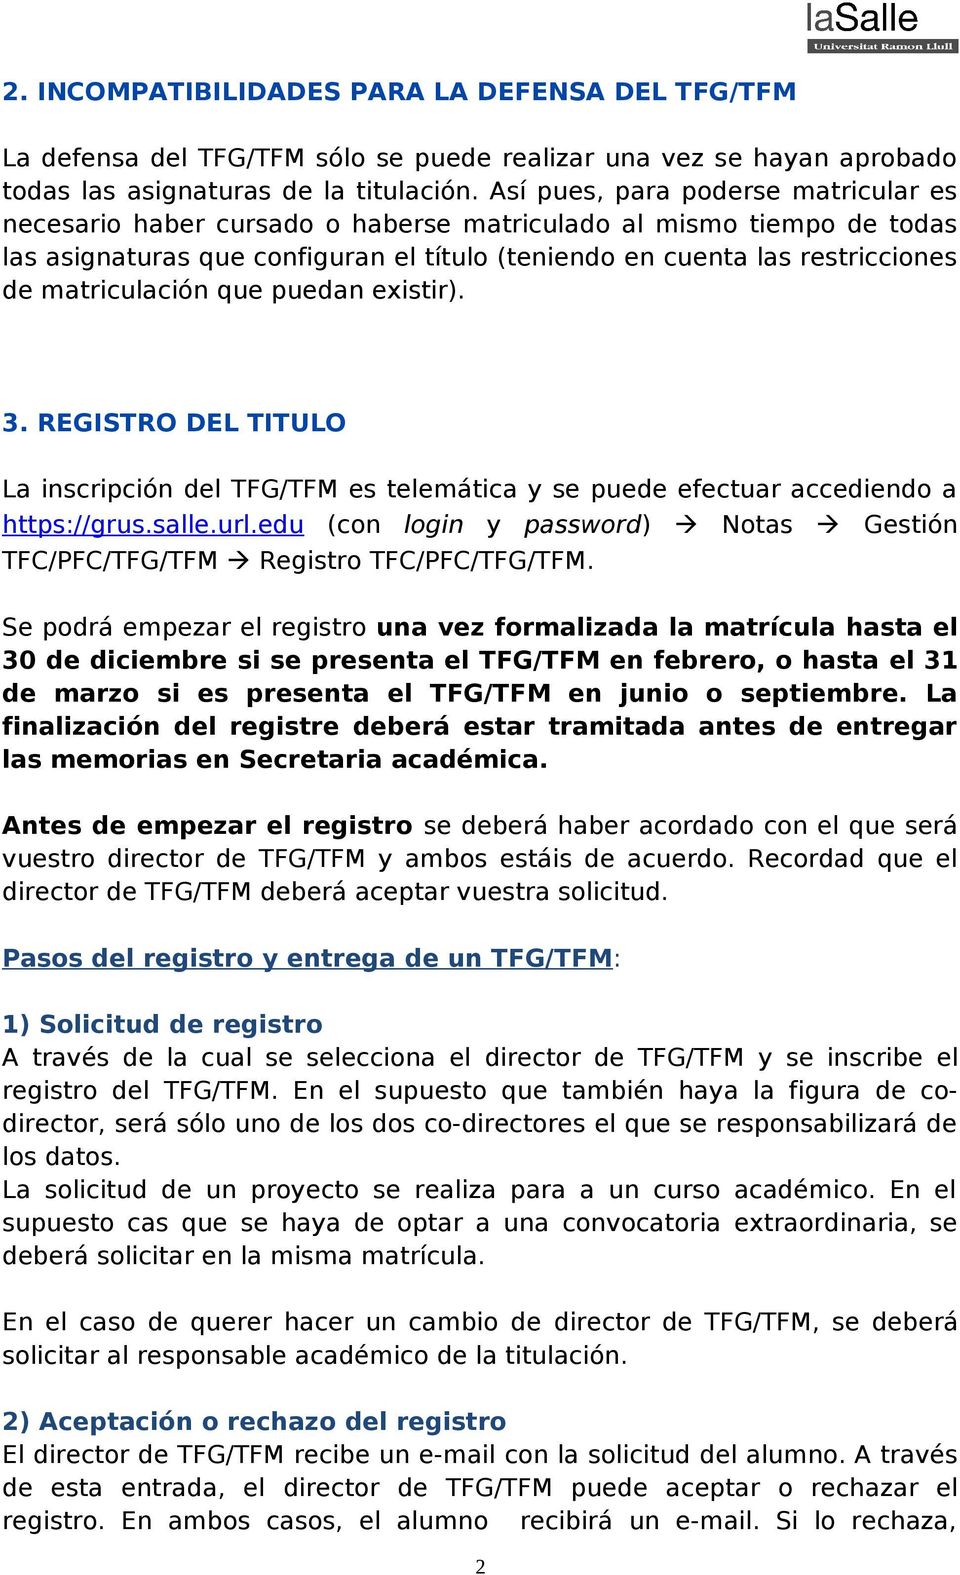 matriculación que puedan existir). 3. REGISTRO DEL TITULO La inscripción del TFG/TFM es telemática y se puede efectuar accediendo a https://grus.salle.url.